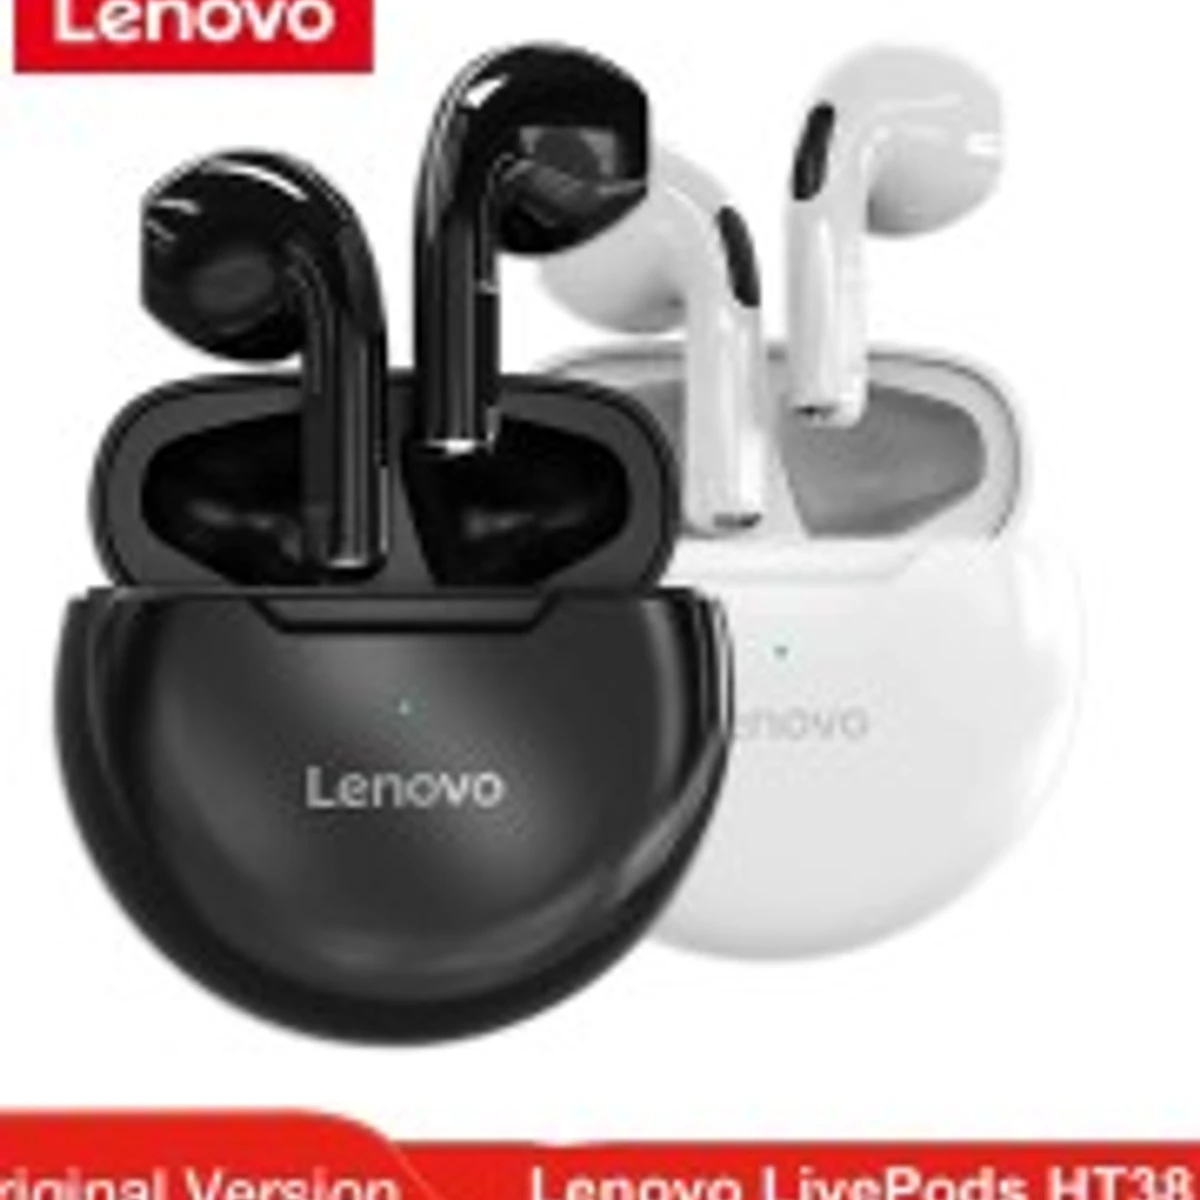 Lenovo Live Pods HT38 TWS Bluetooth Earphone Mini Waterproof Wireless Earbuds